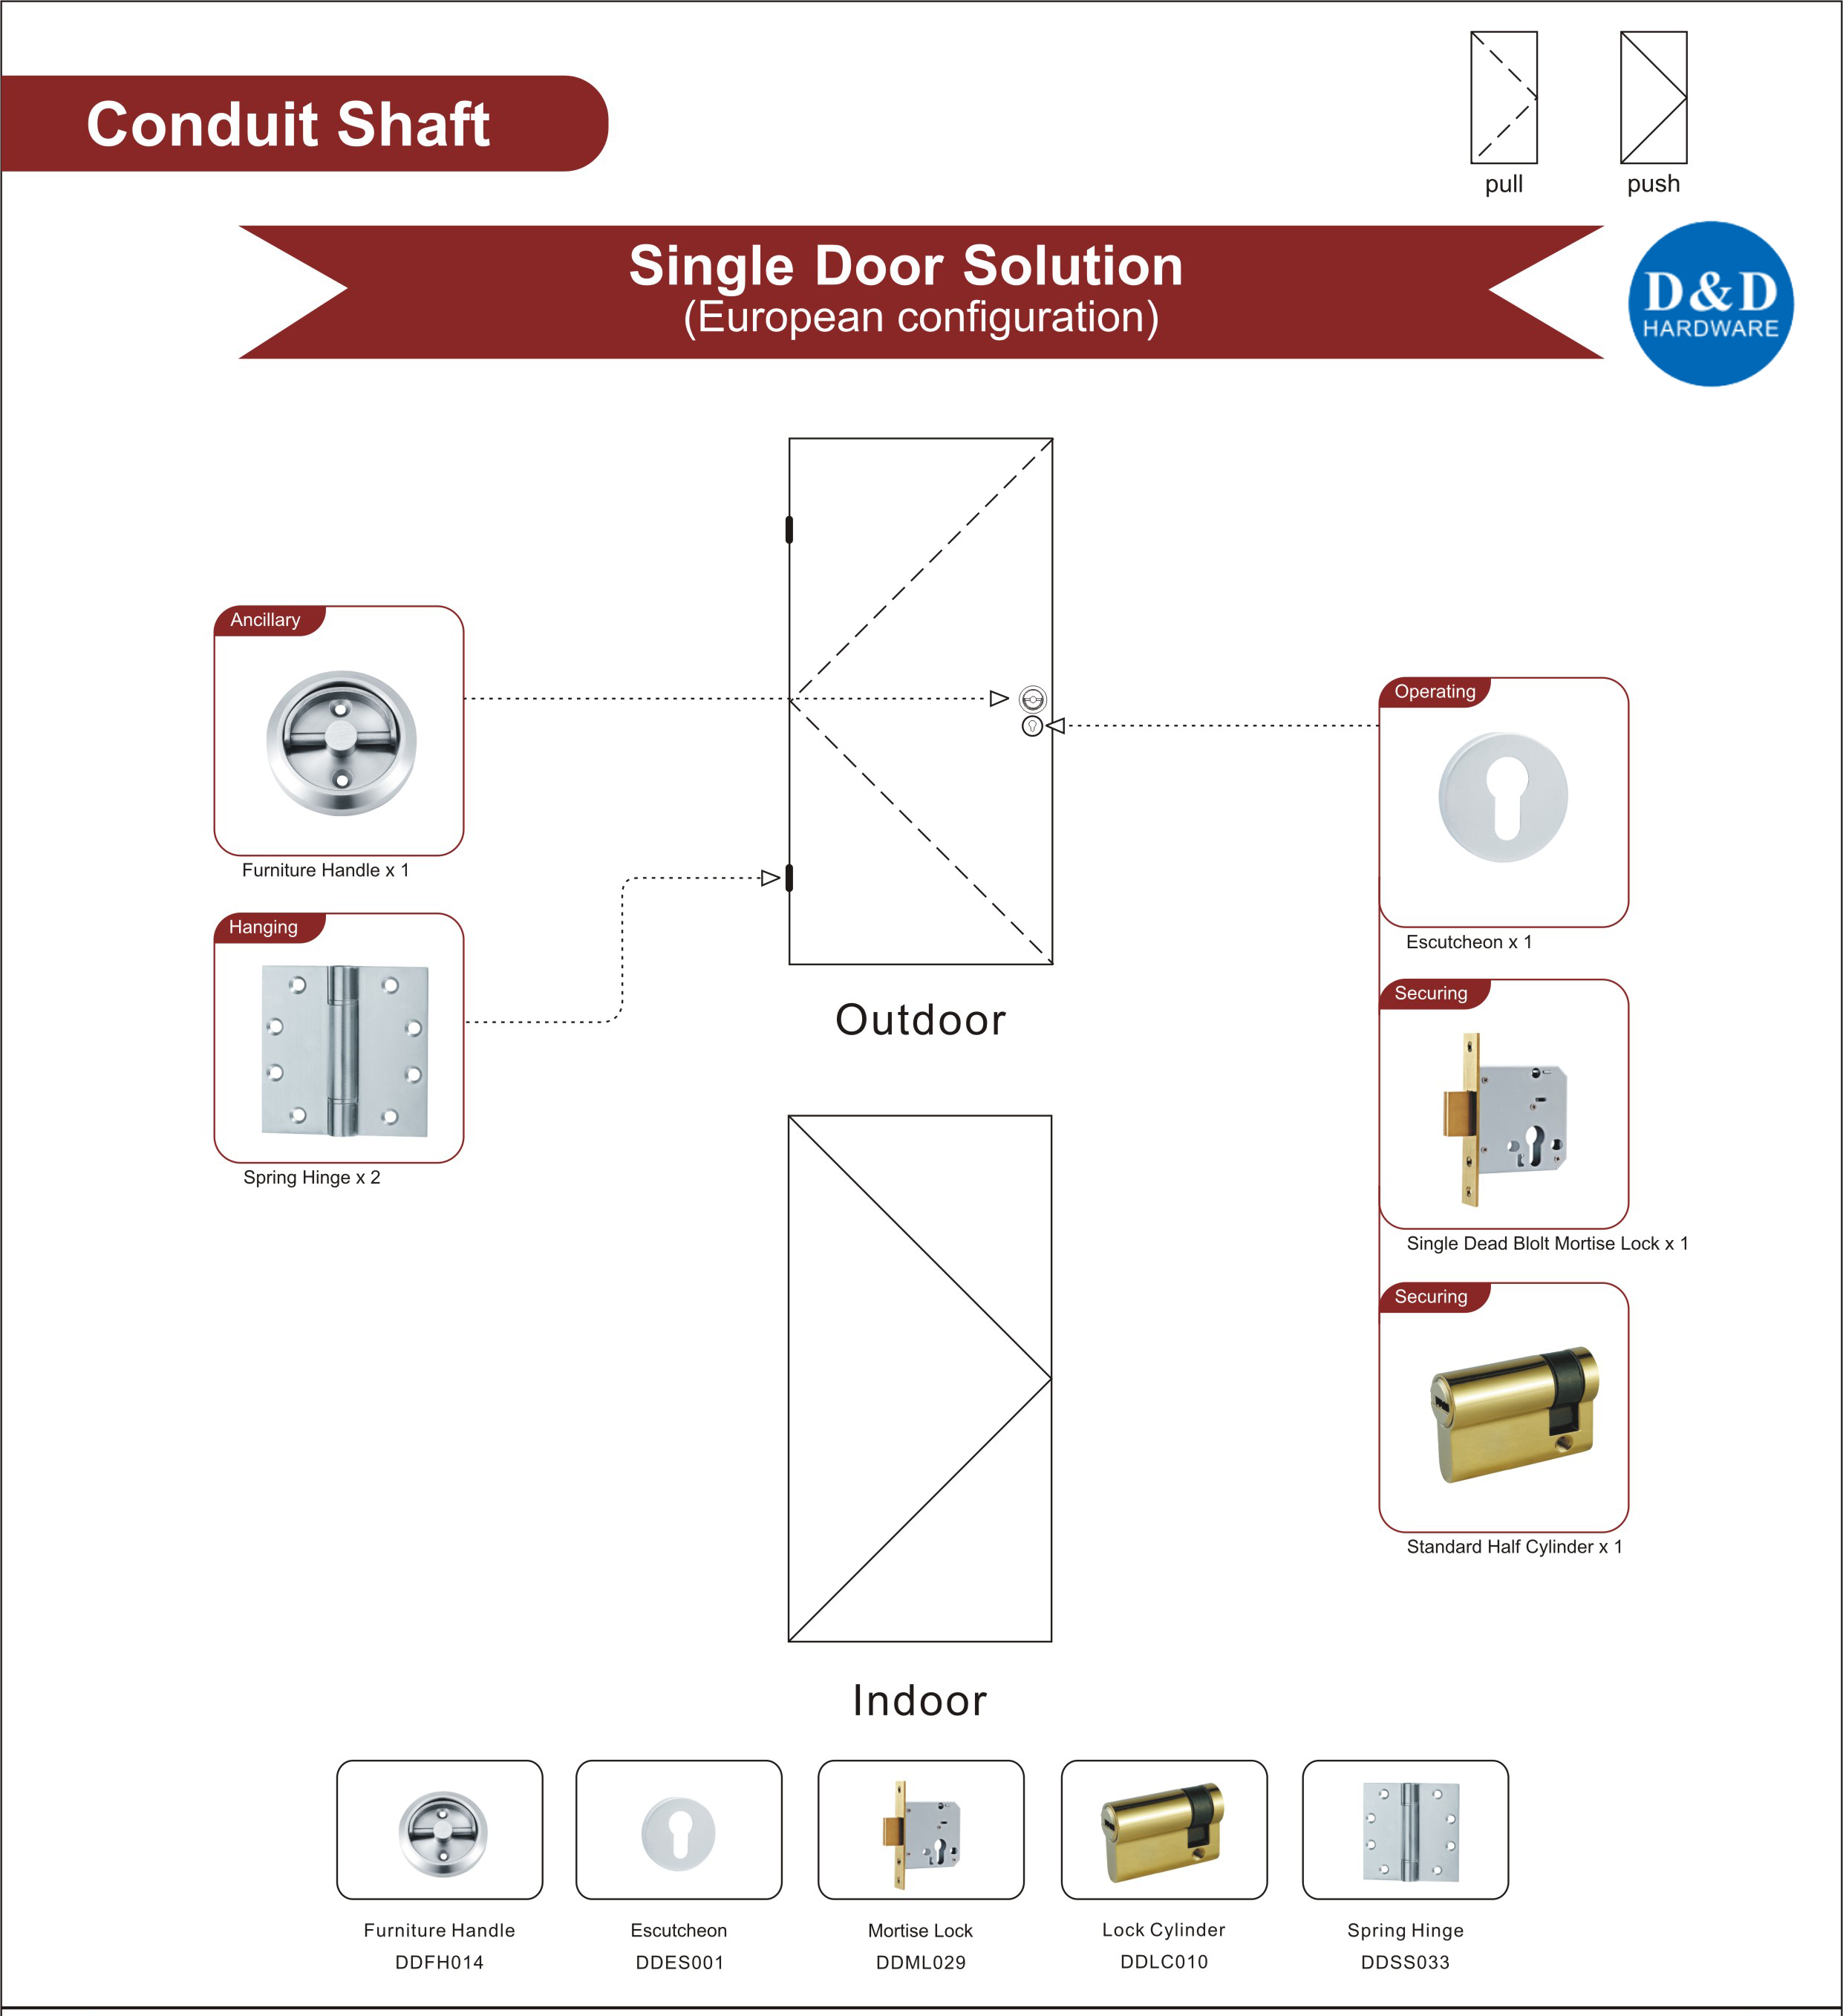 Wooden Door Hardware for Conduit Shaft Single Door